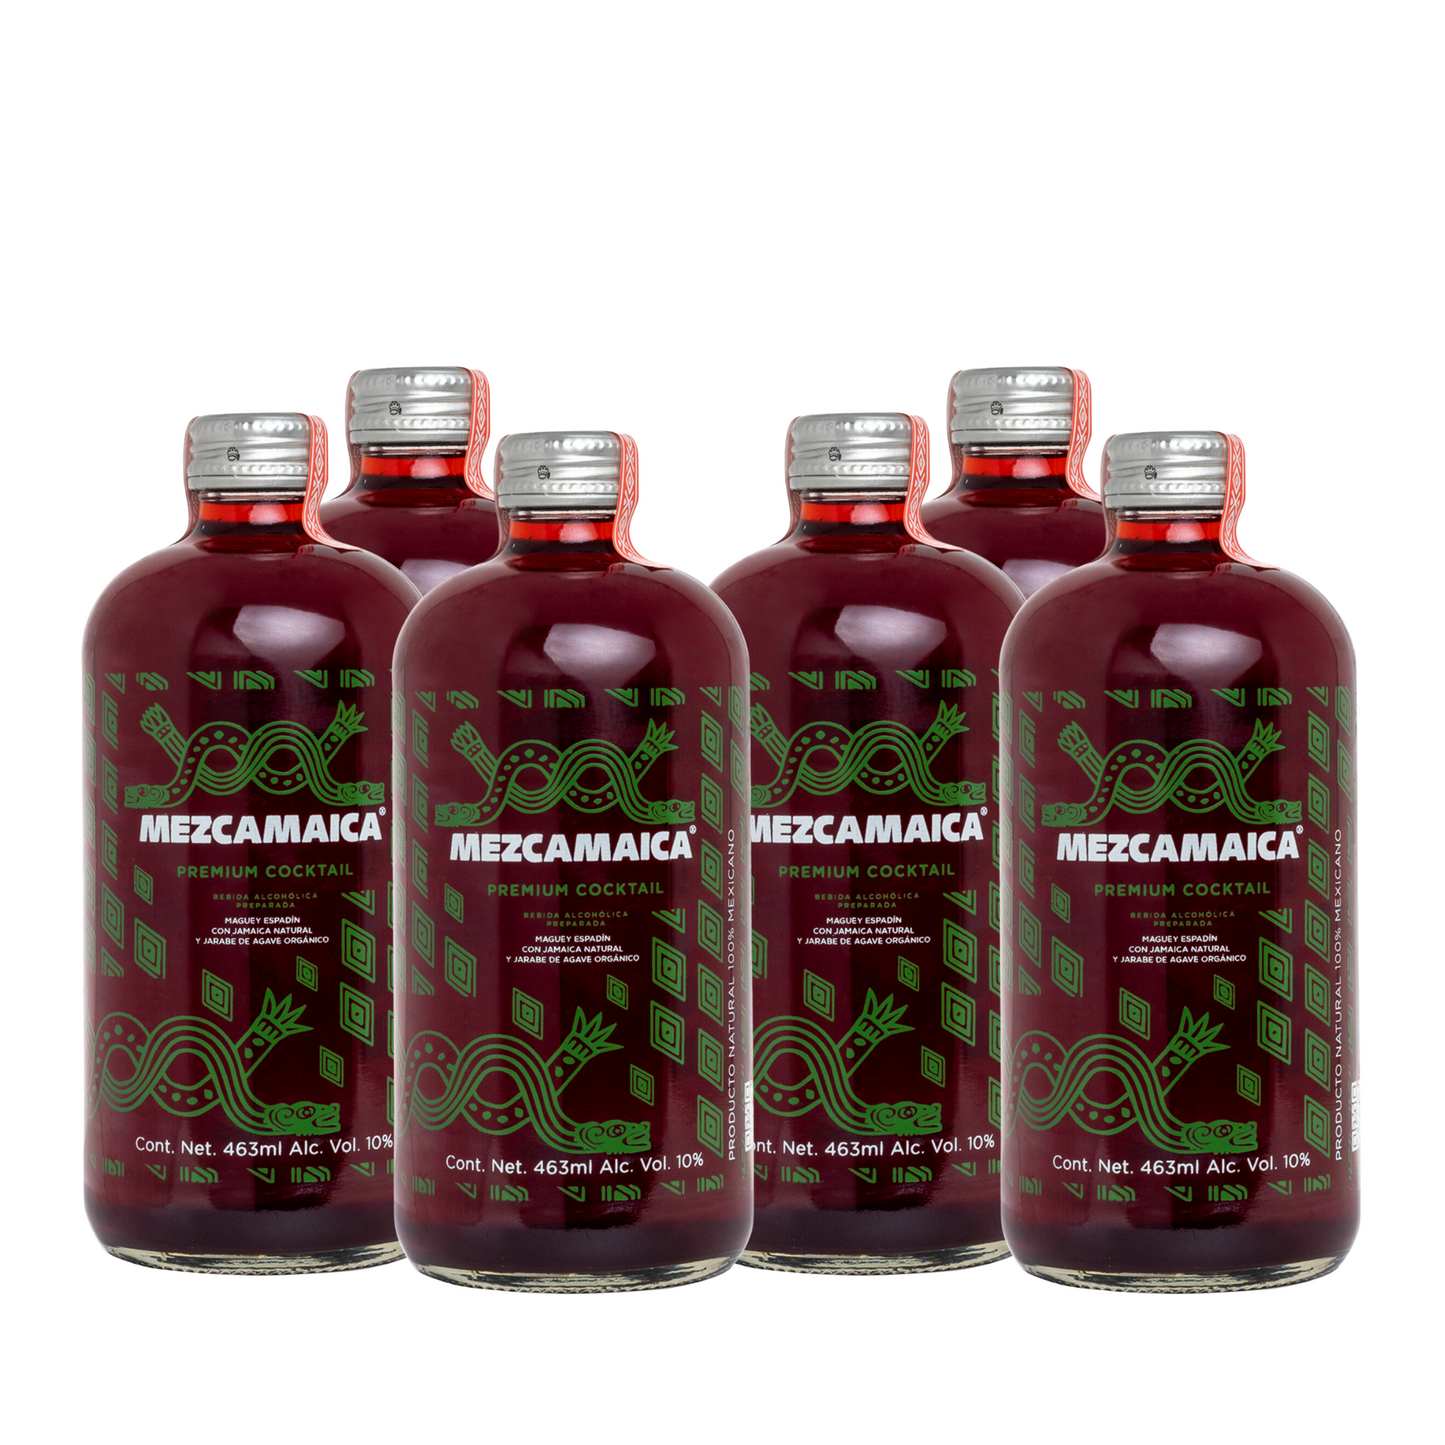 MEZCAMAICA Premium Cocktail 6 bottles of 463ml